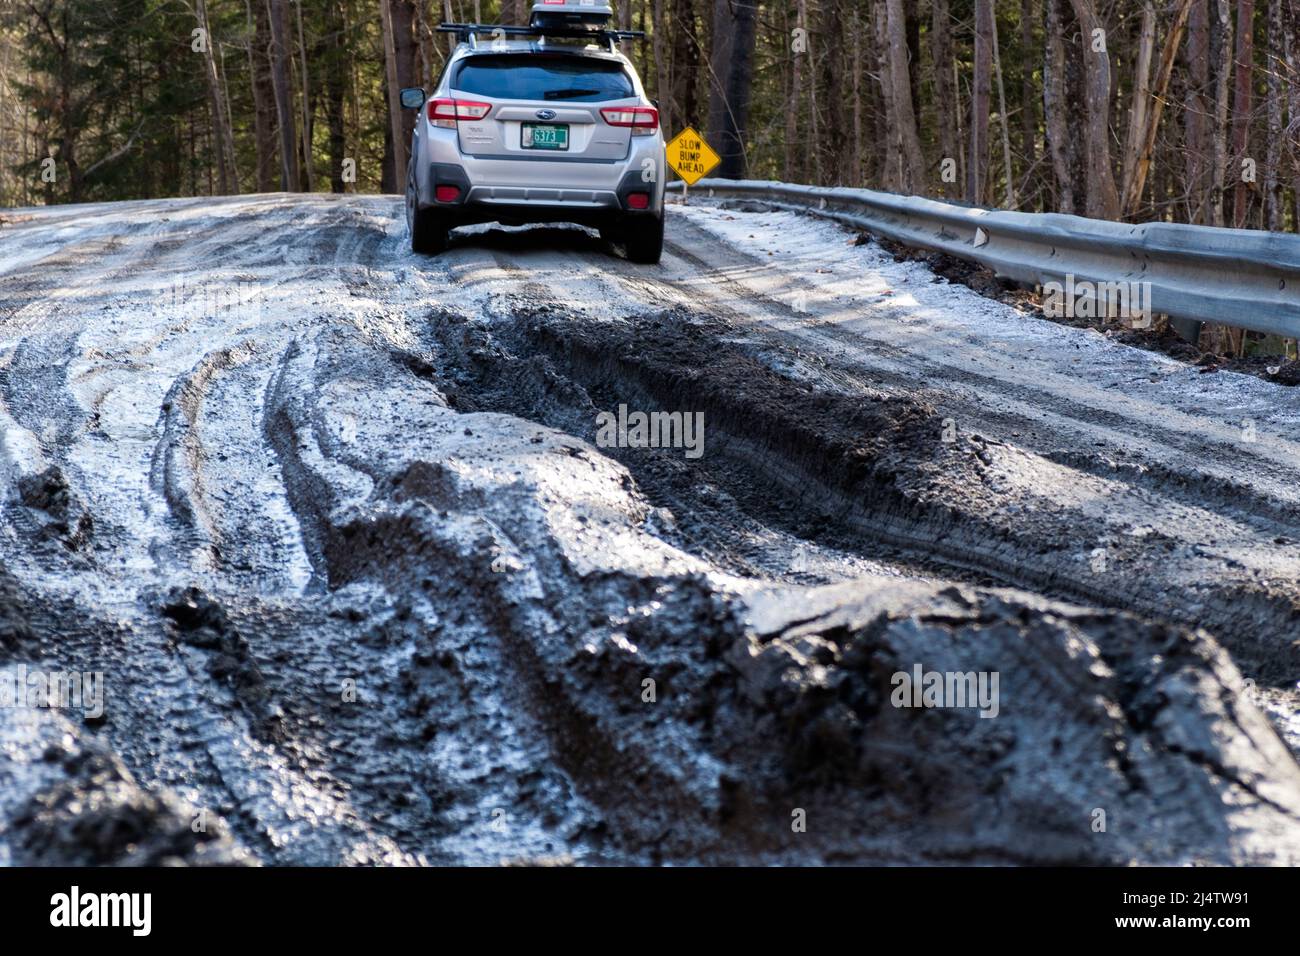 La saison de la boue, la descente des routes de terre du Vermont dans les tourbières, se produit chaque printemps, habituellement en mars et avril. Etat du Vermont, Etats-Unis. Banque D'Images